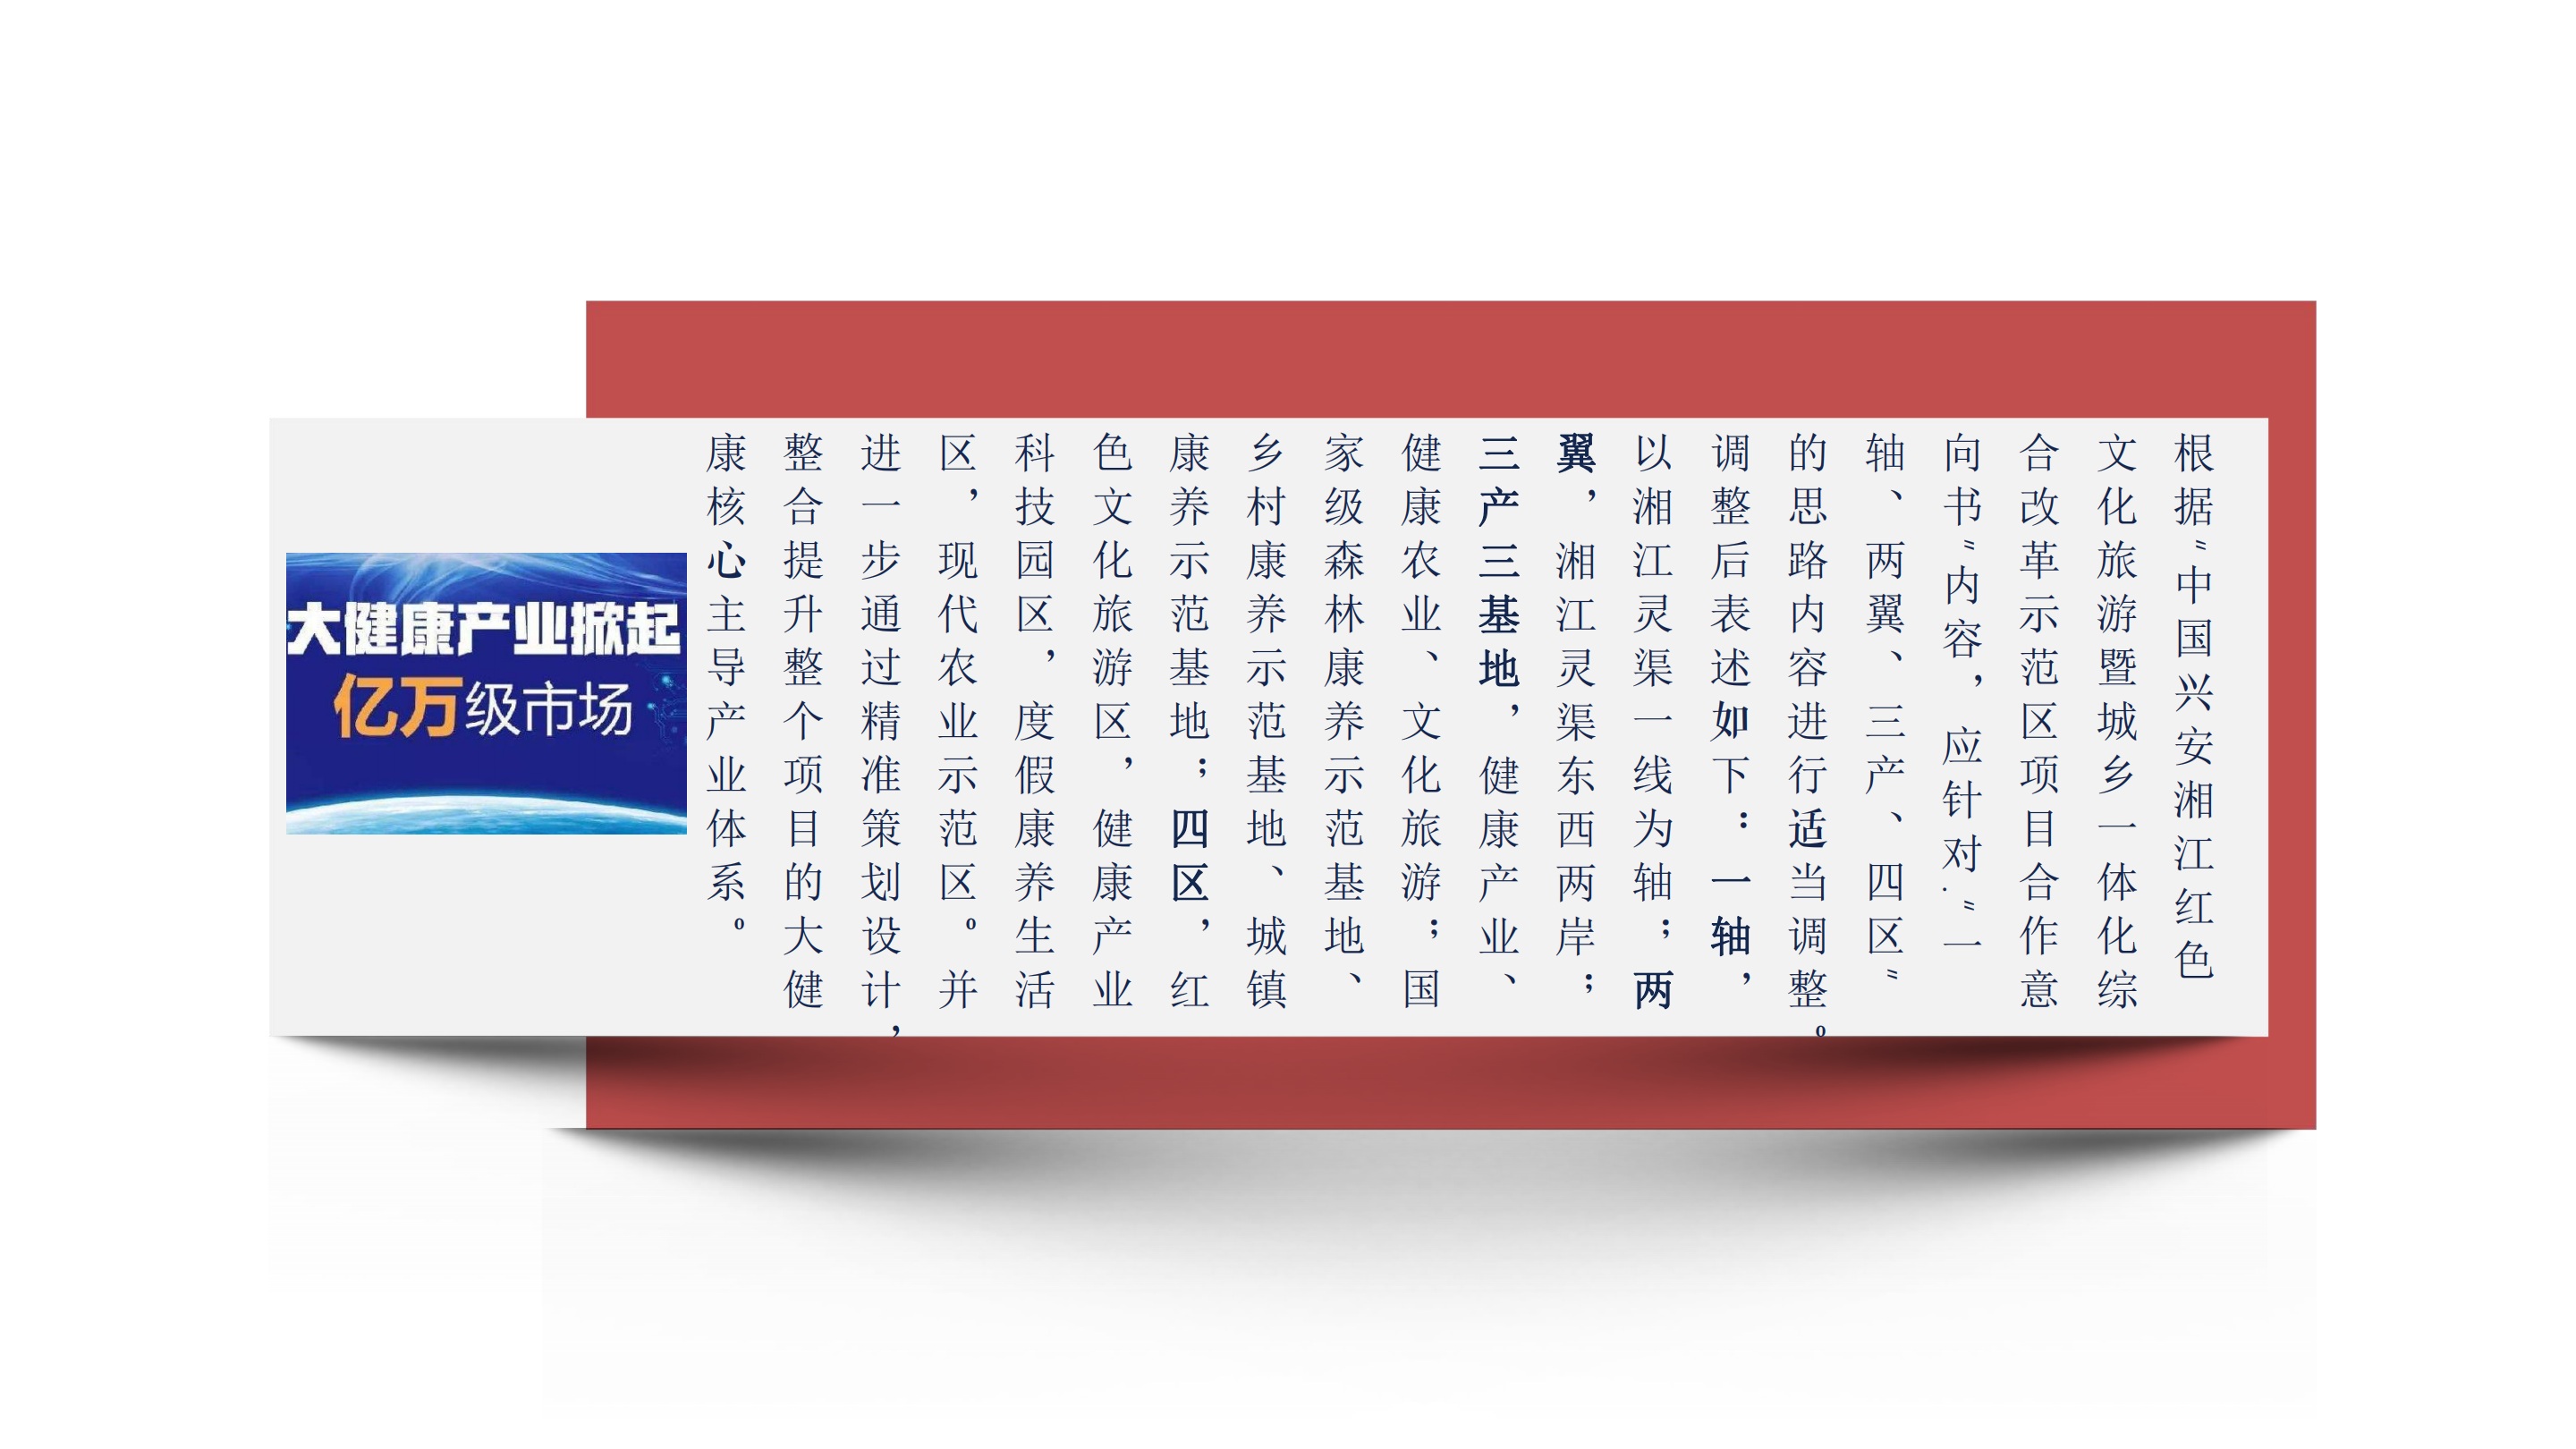 红色湘江文化旅游与乡村振兴融合发展示范项目考察的思考与建议